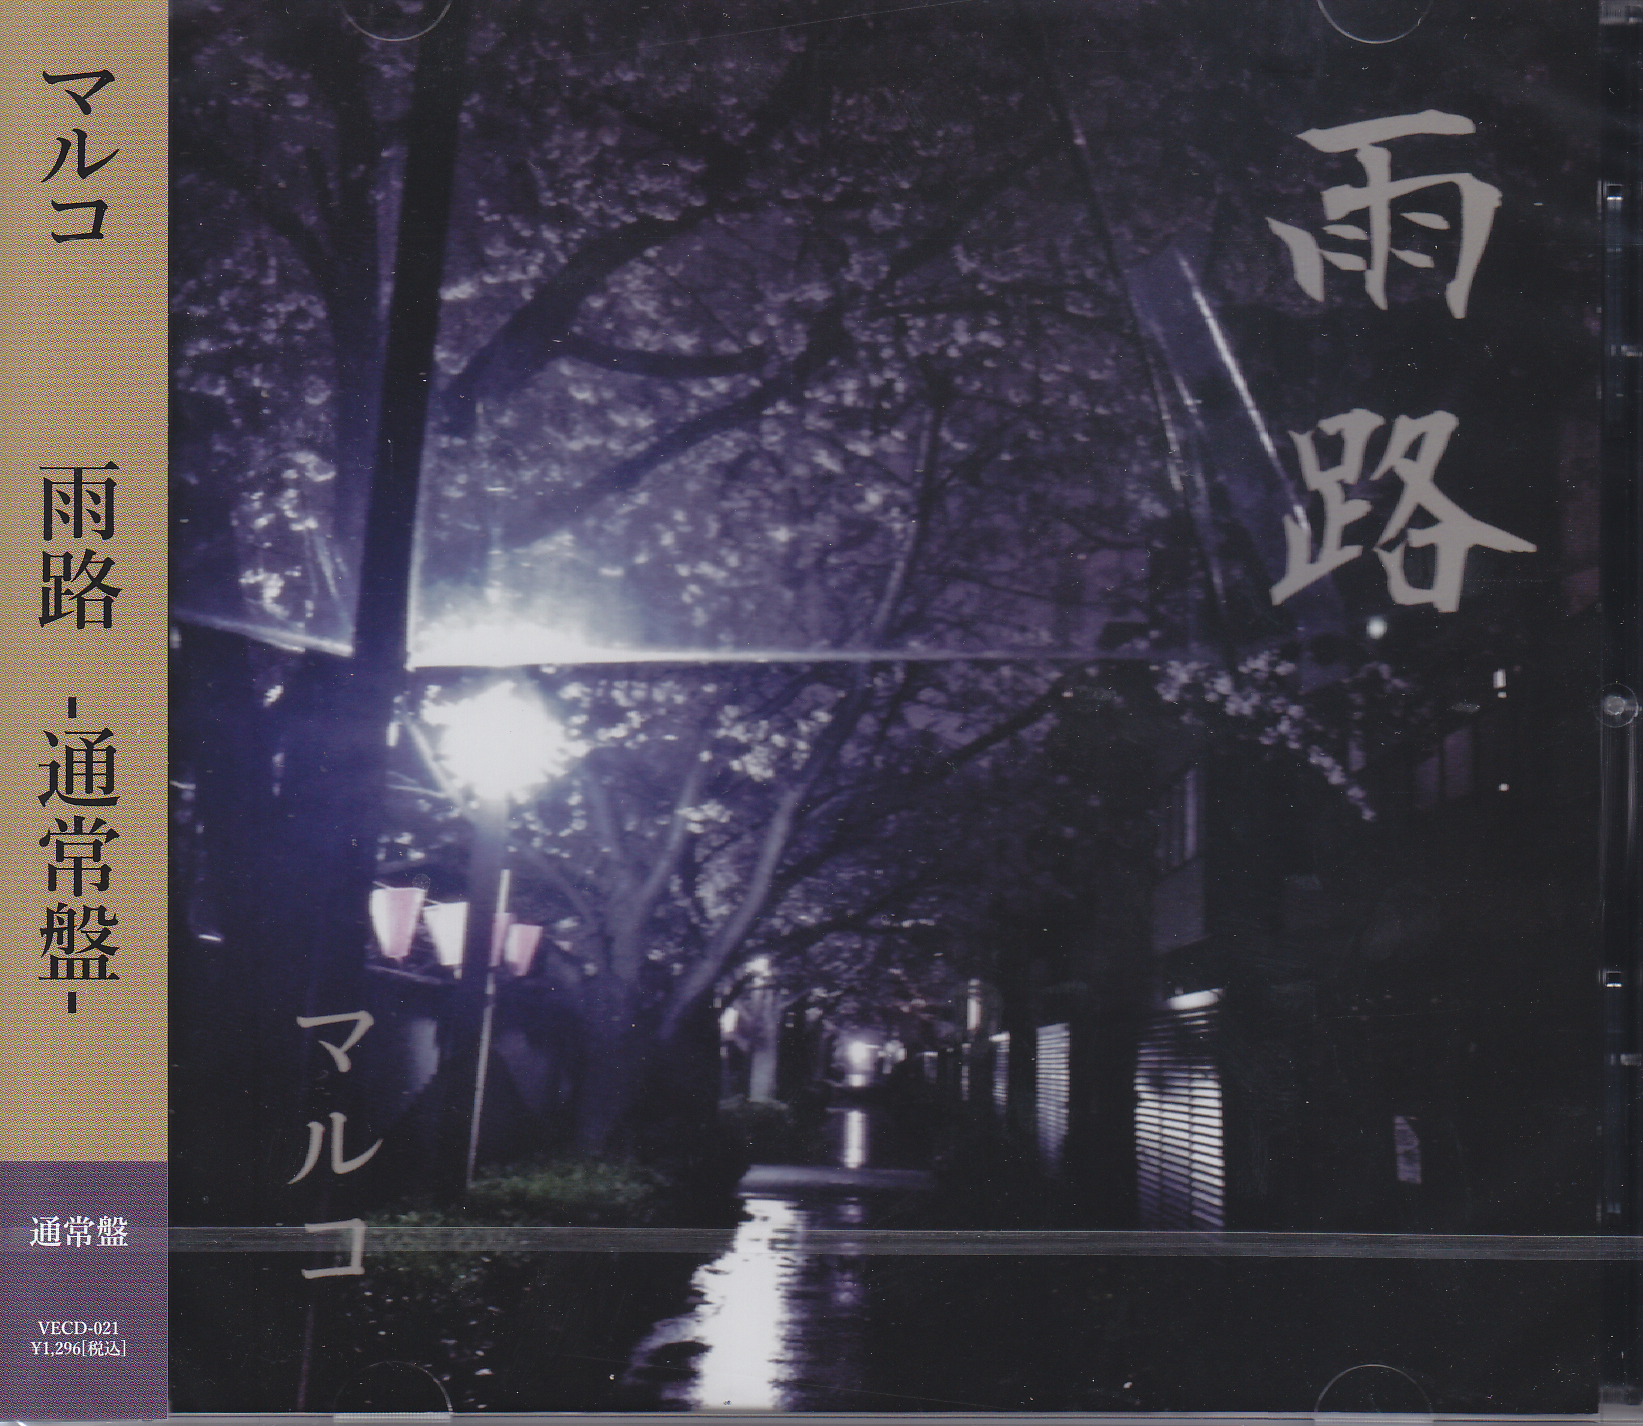 マルコ ( マルコ )  の CD 【通常盤】雨路